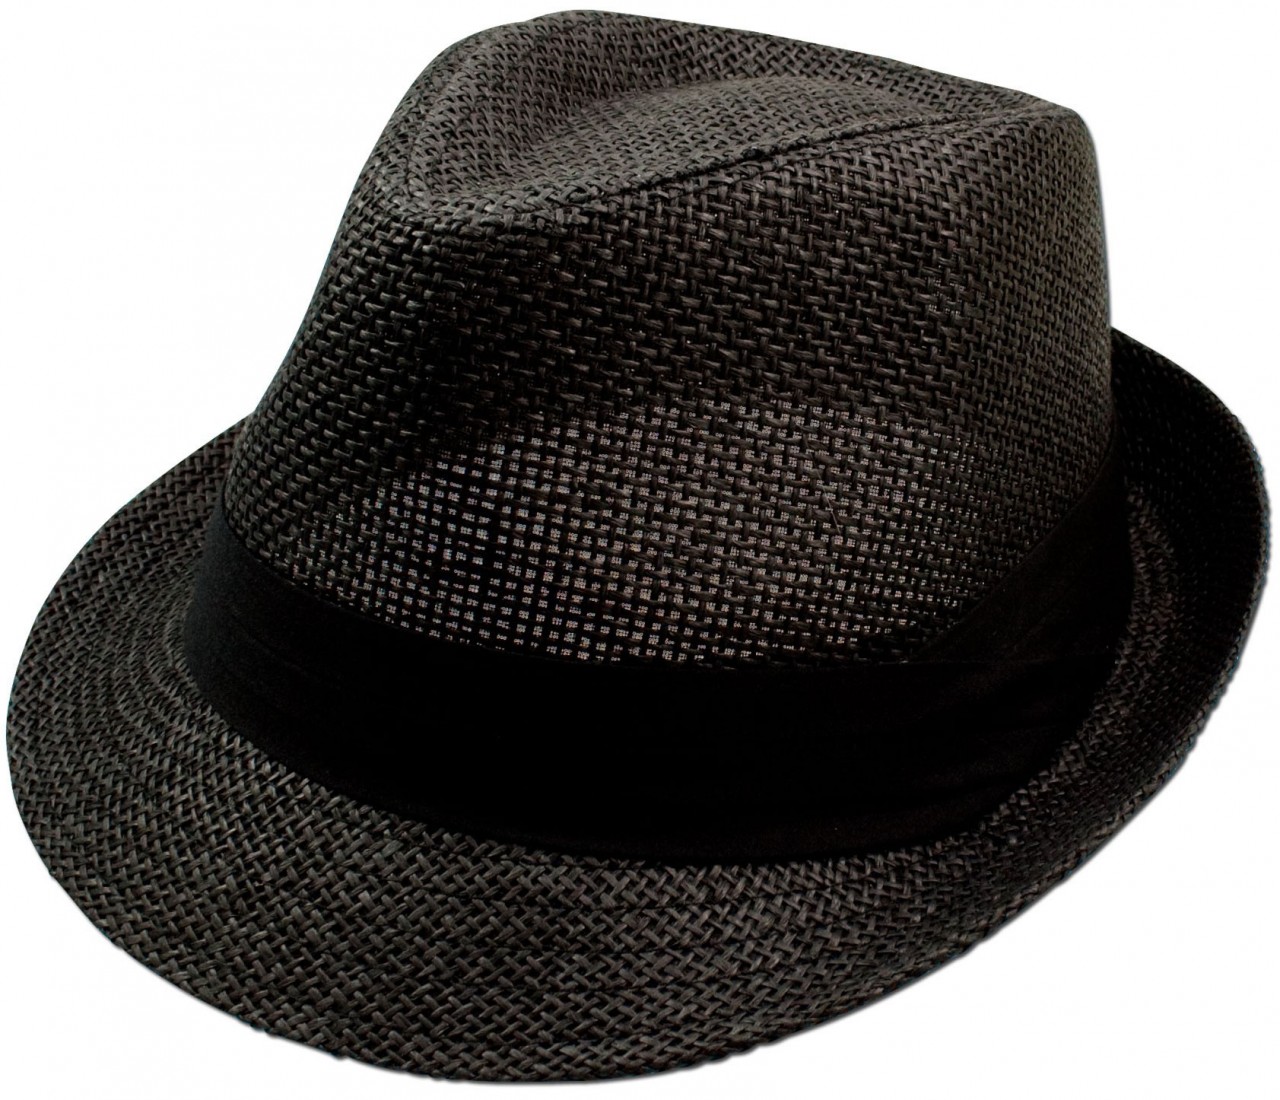 Trachten Straw Hat, Black